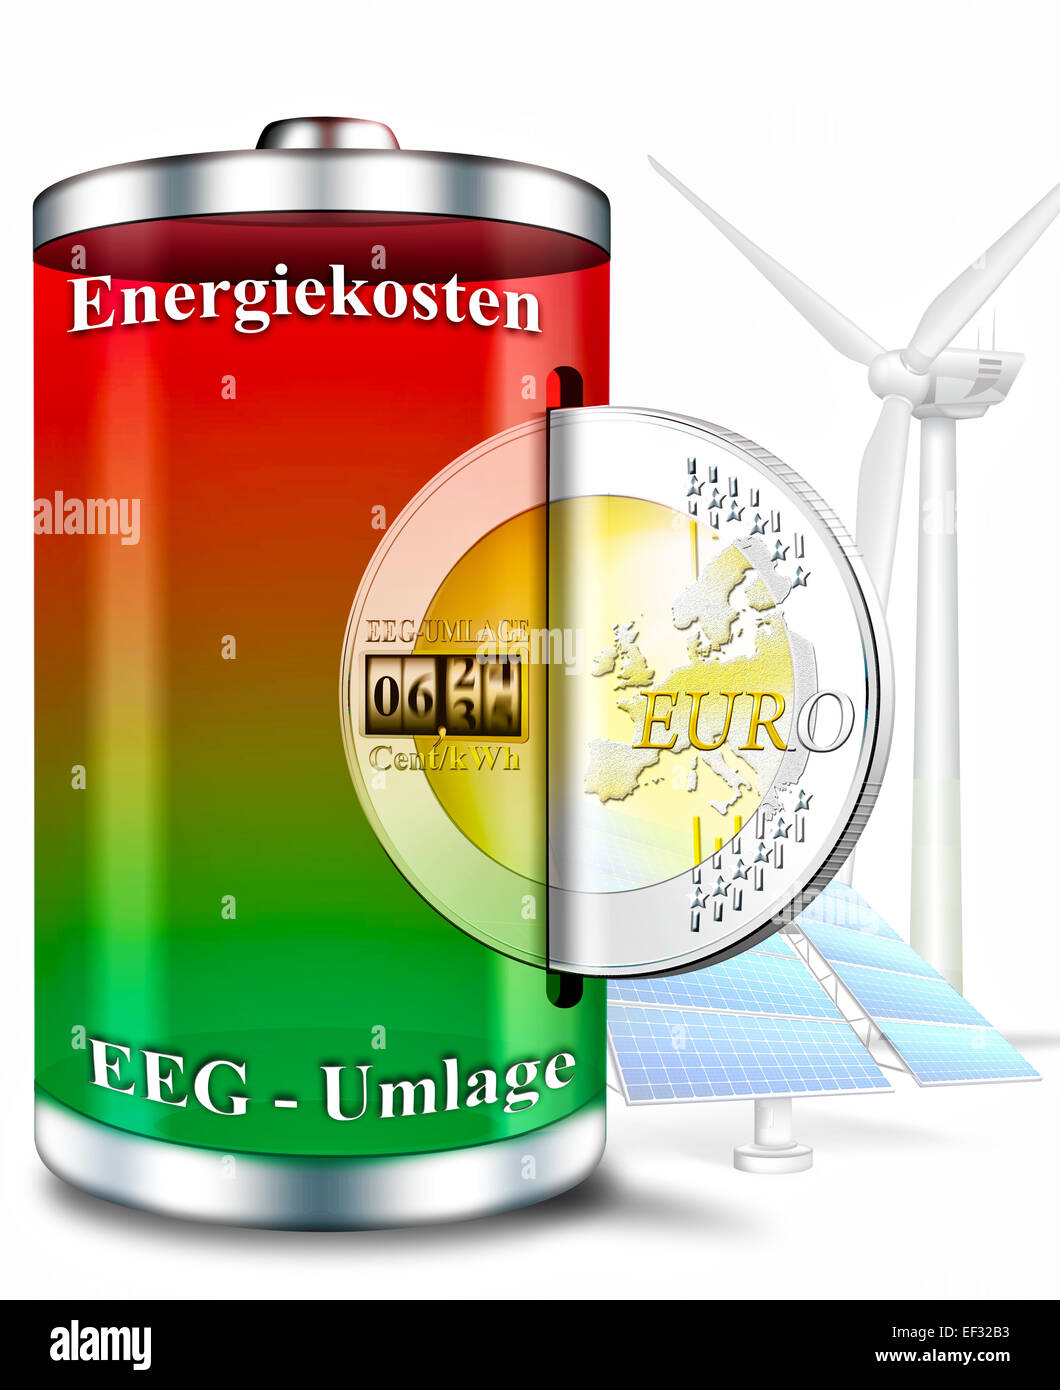 Rechargeable battery, battery, with label 'Energiekosten, EEG Umlage', German for 'energy costs, EEG renewable energy surcharge' Stock Photo